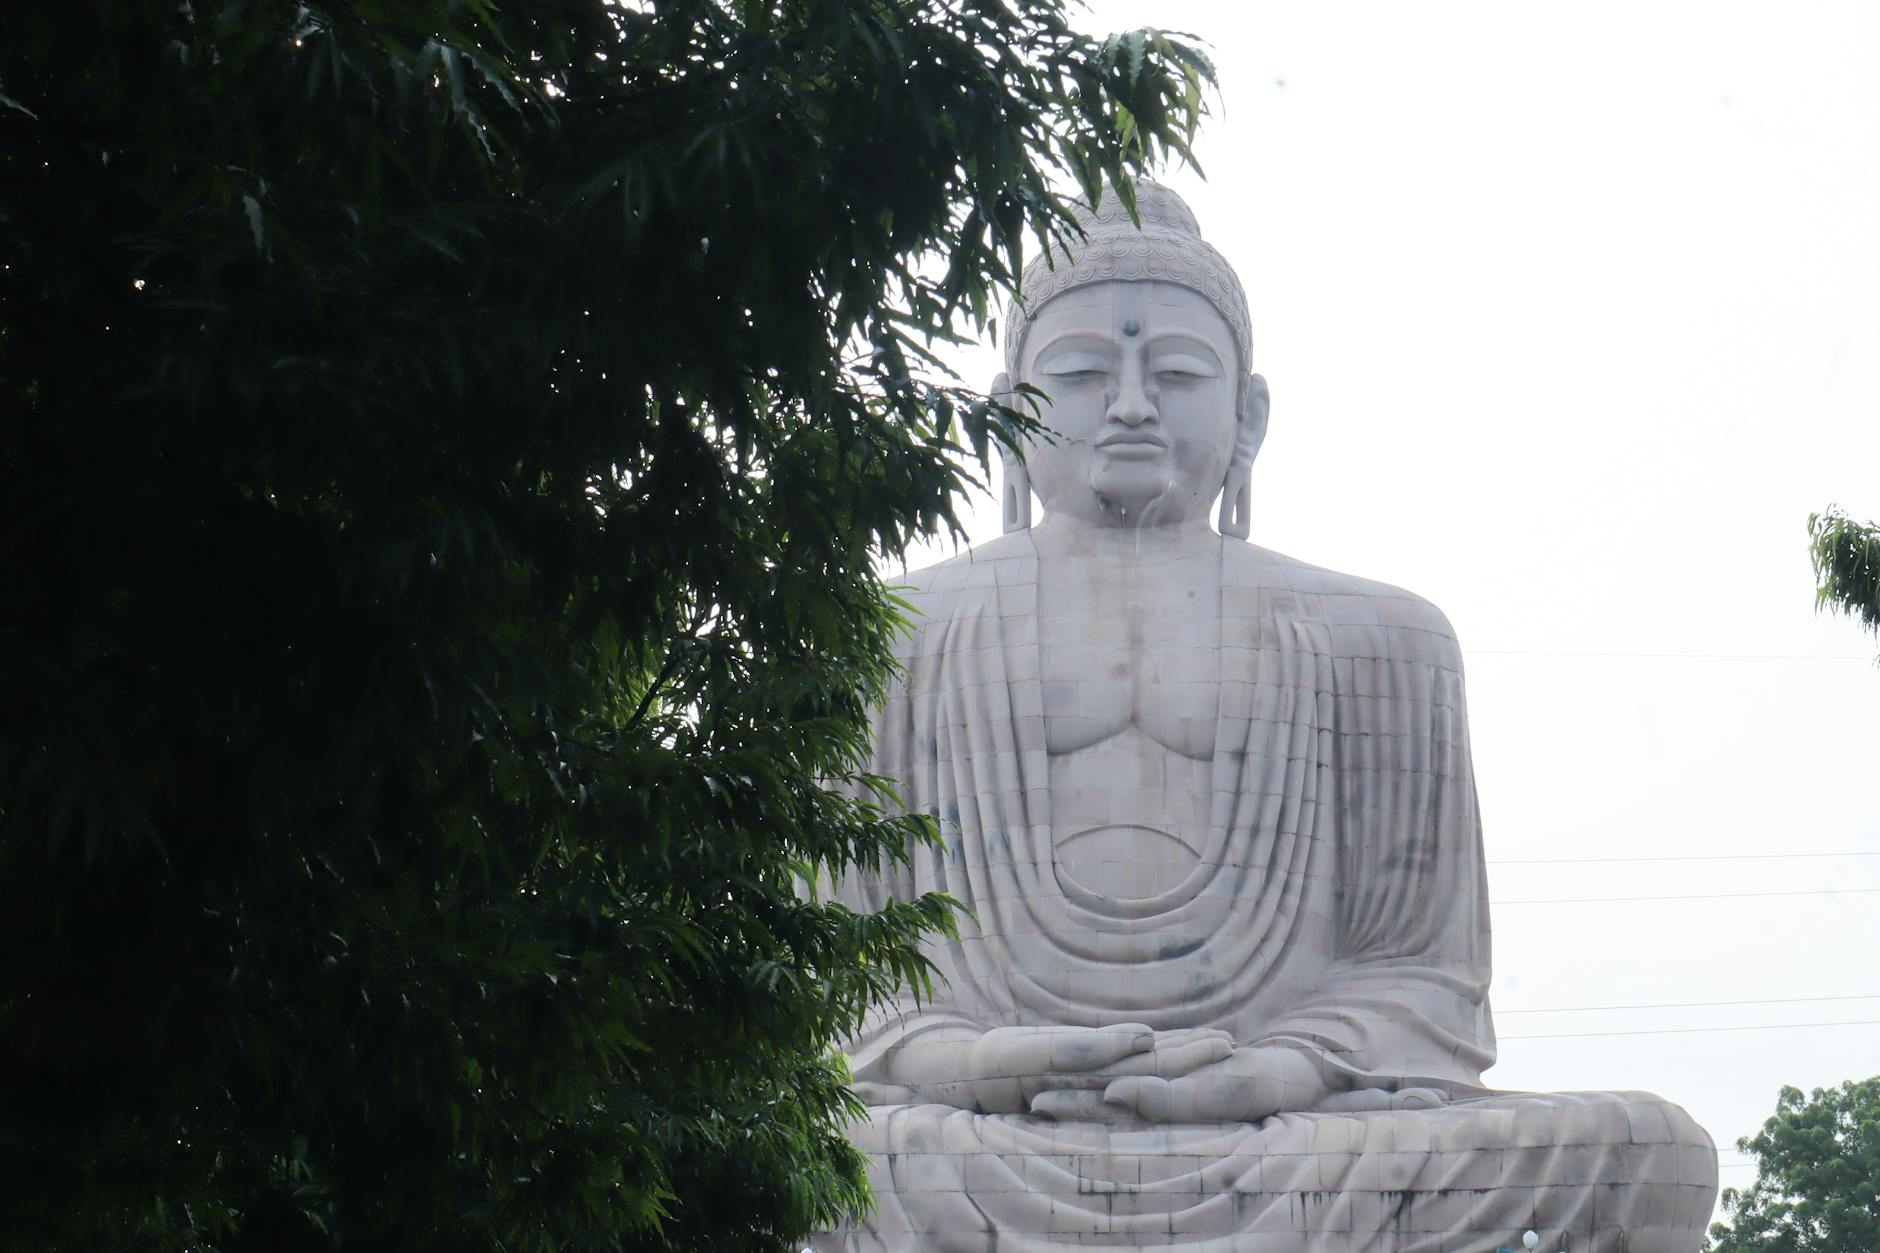 the great buddha statue in bodh gaya in india